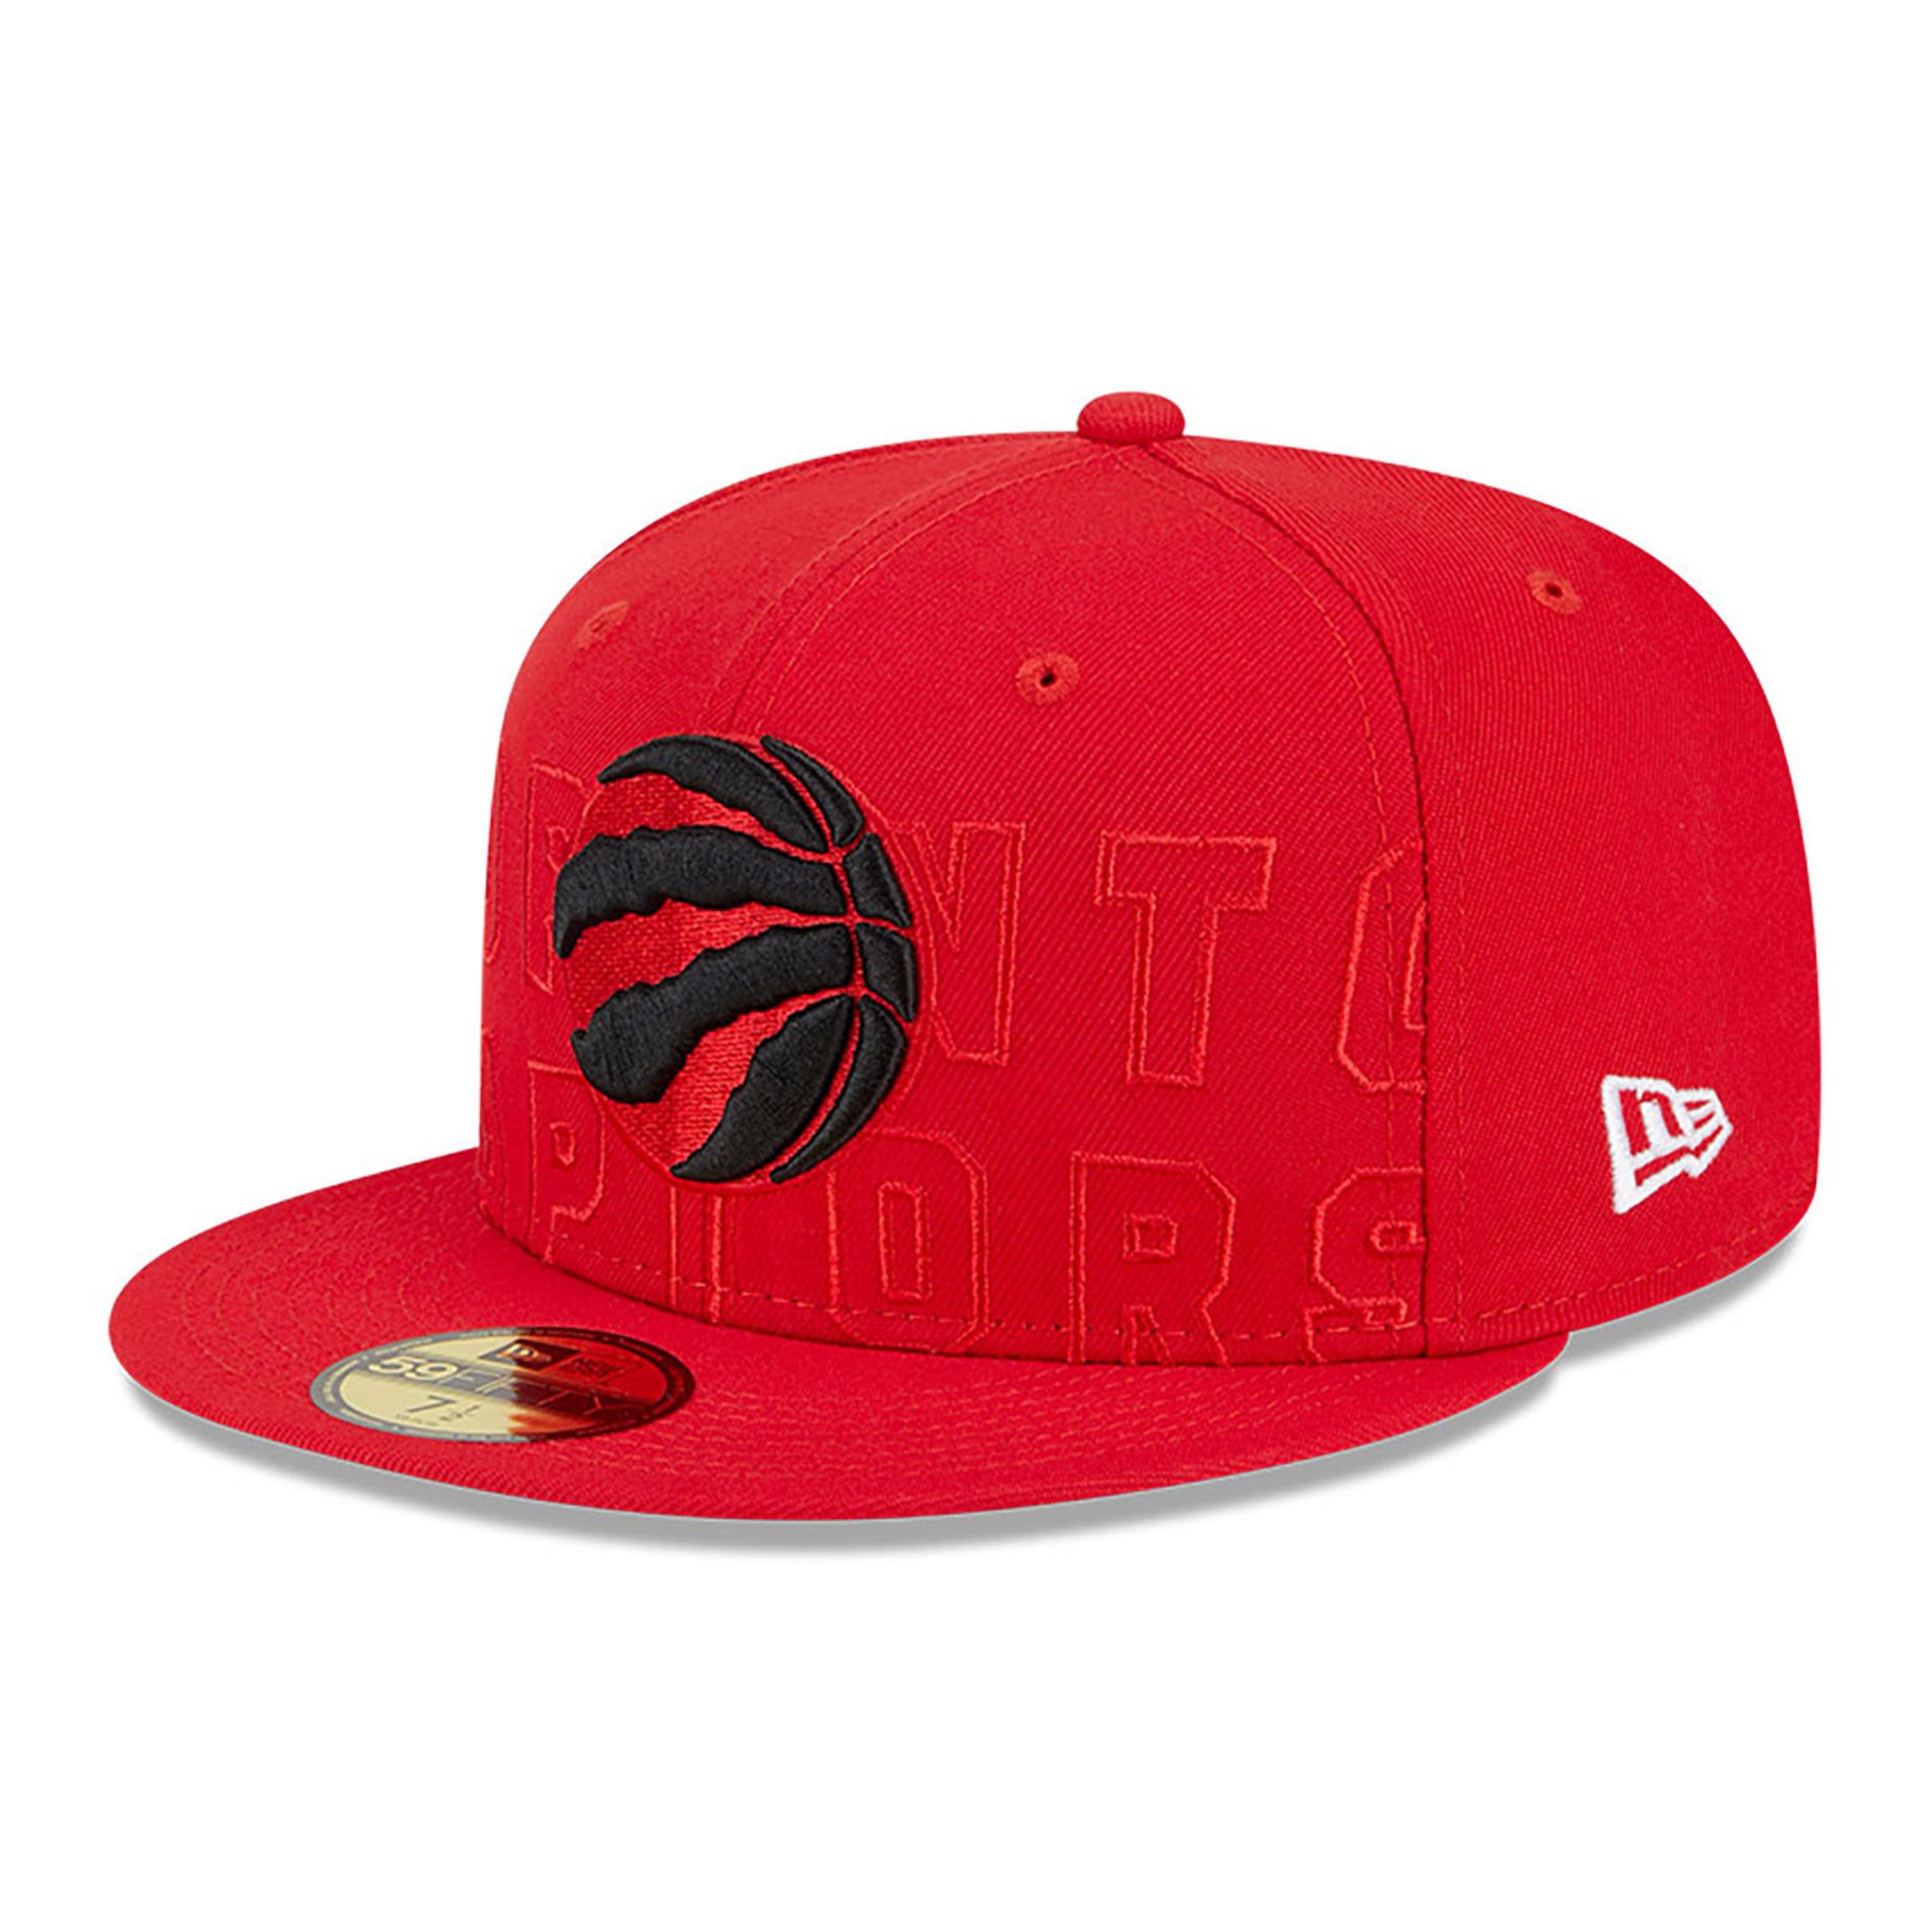 Hats - Toronto Raptors